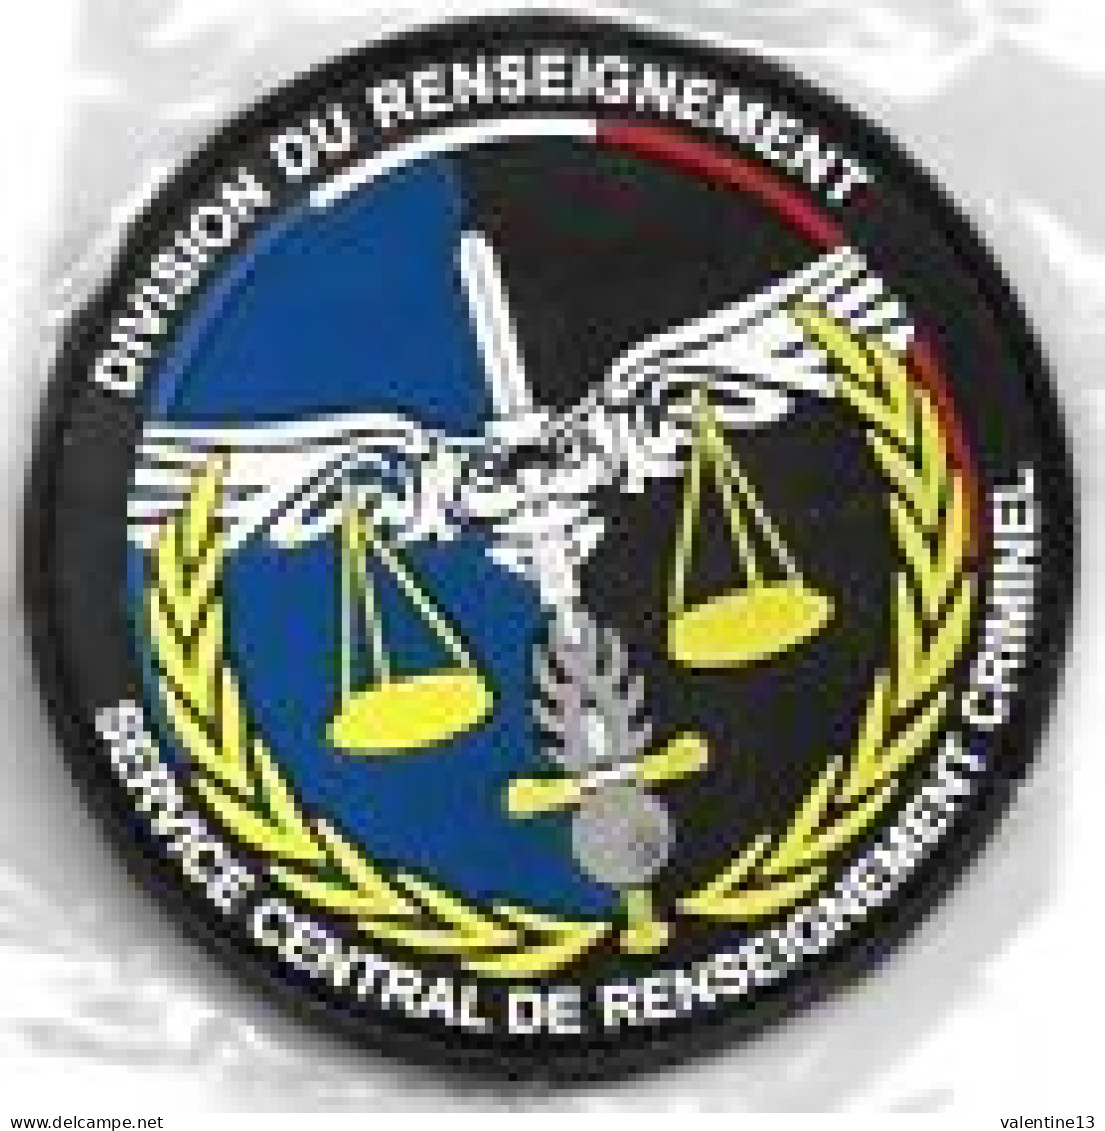 Ecusson PVC GENDARMERIE DIVISION DU RENSEIGNEMENT SCE CENTRAL CRIMINEL - Policia